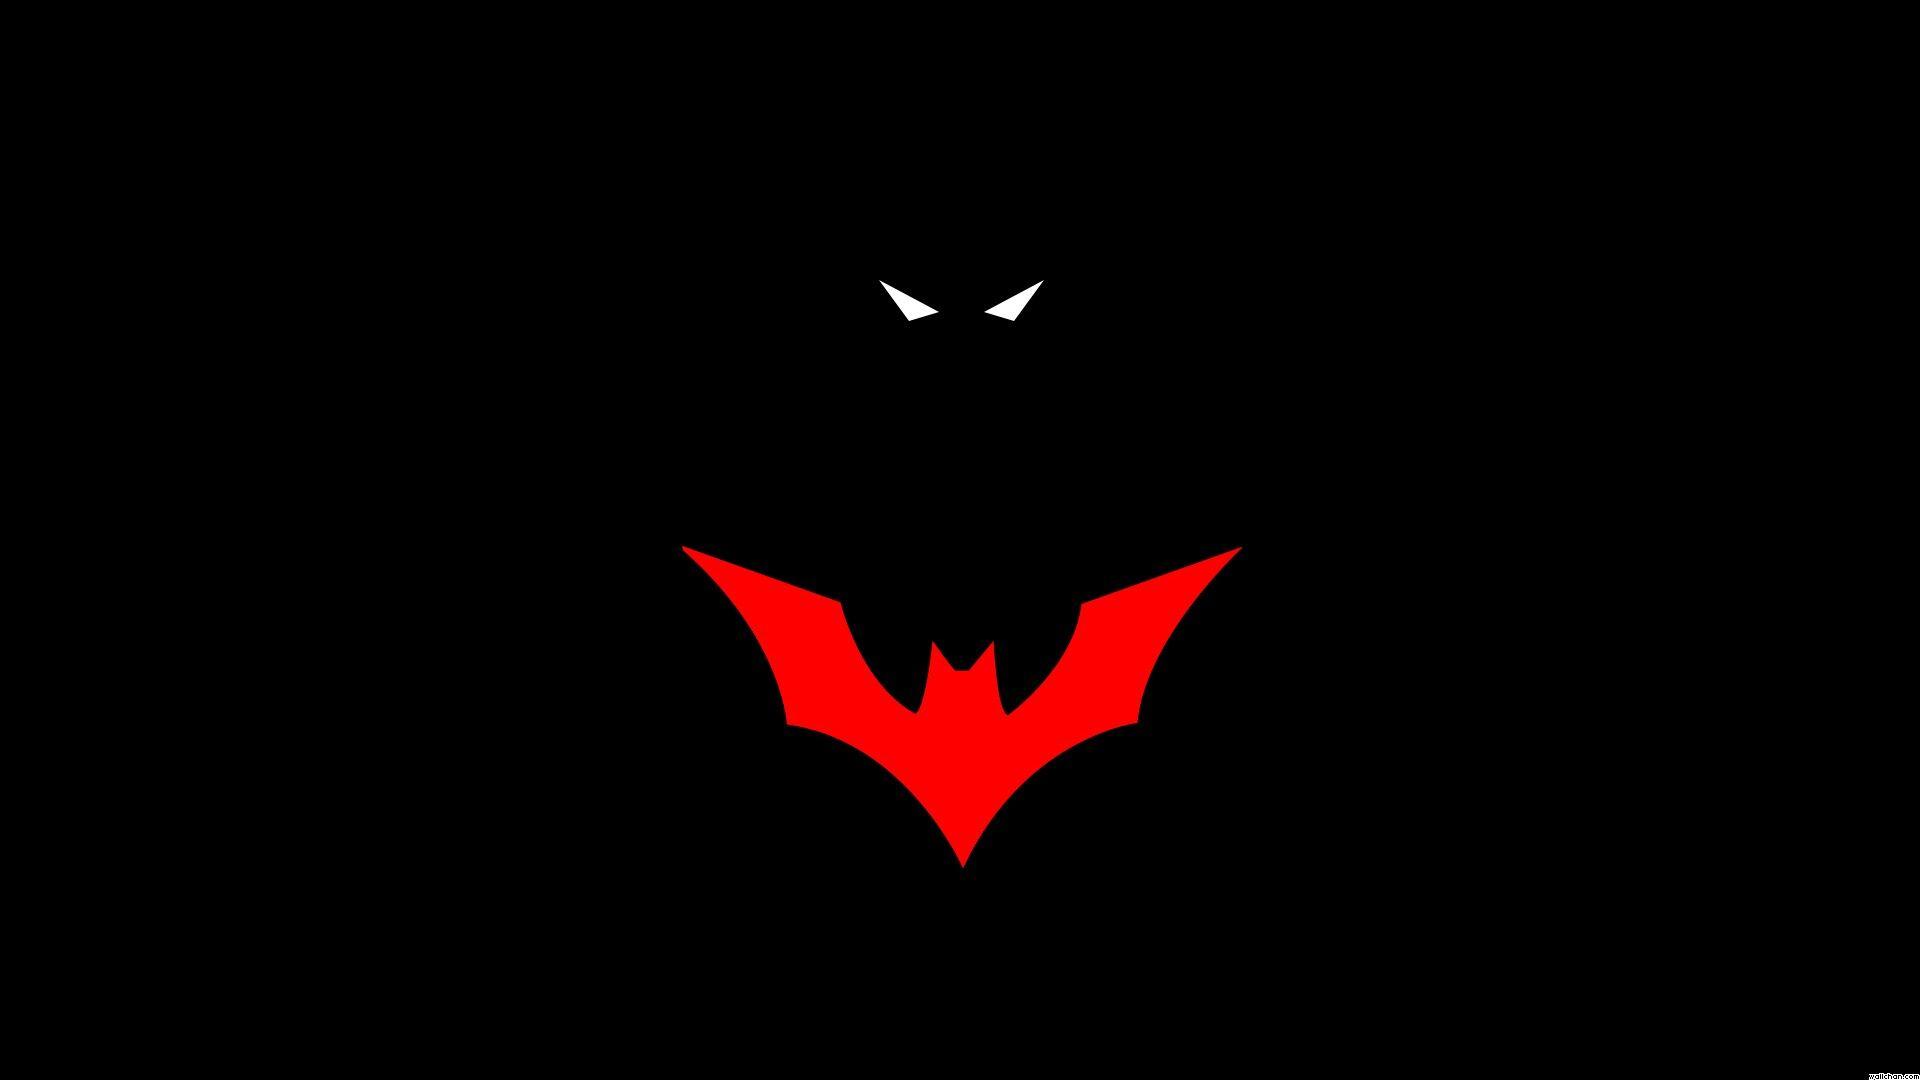 Batman Beyond. Batman wallpaper, Cool batman